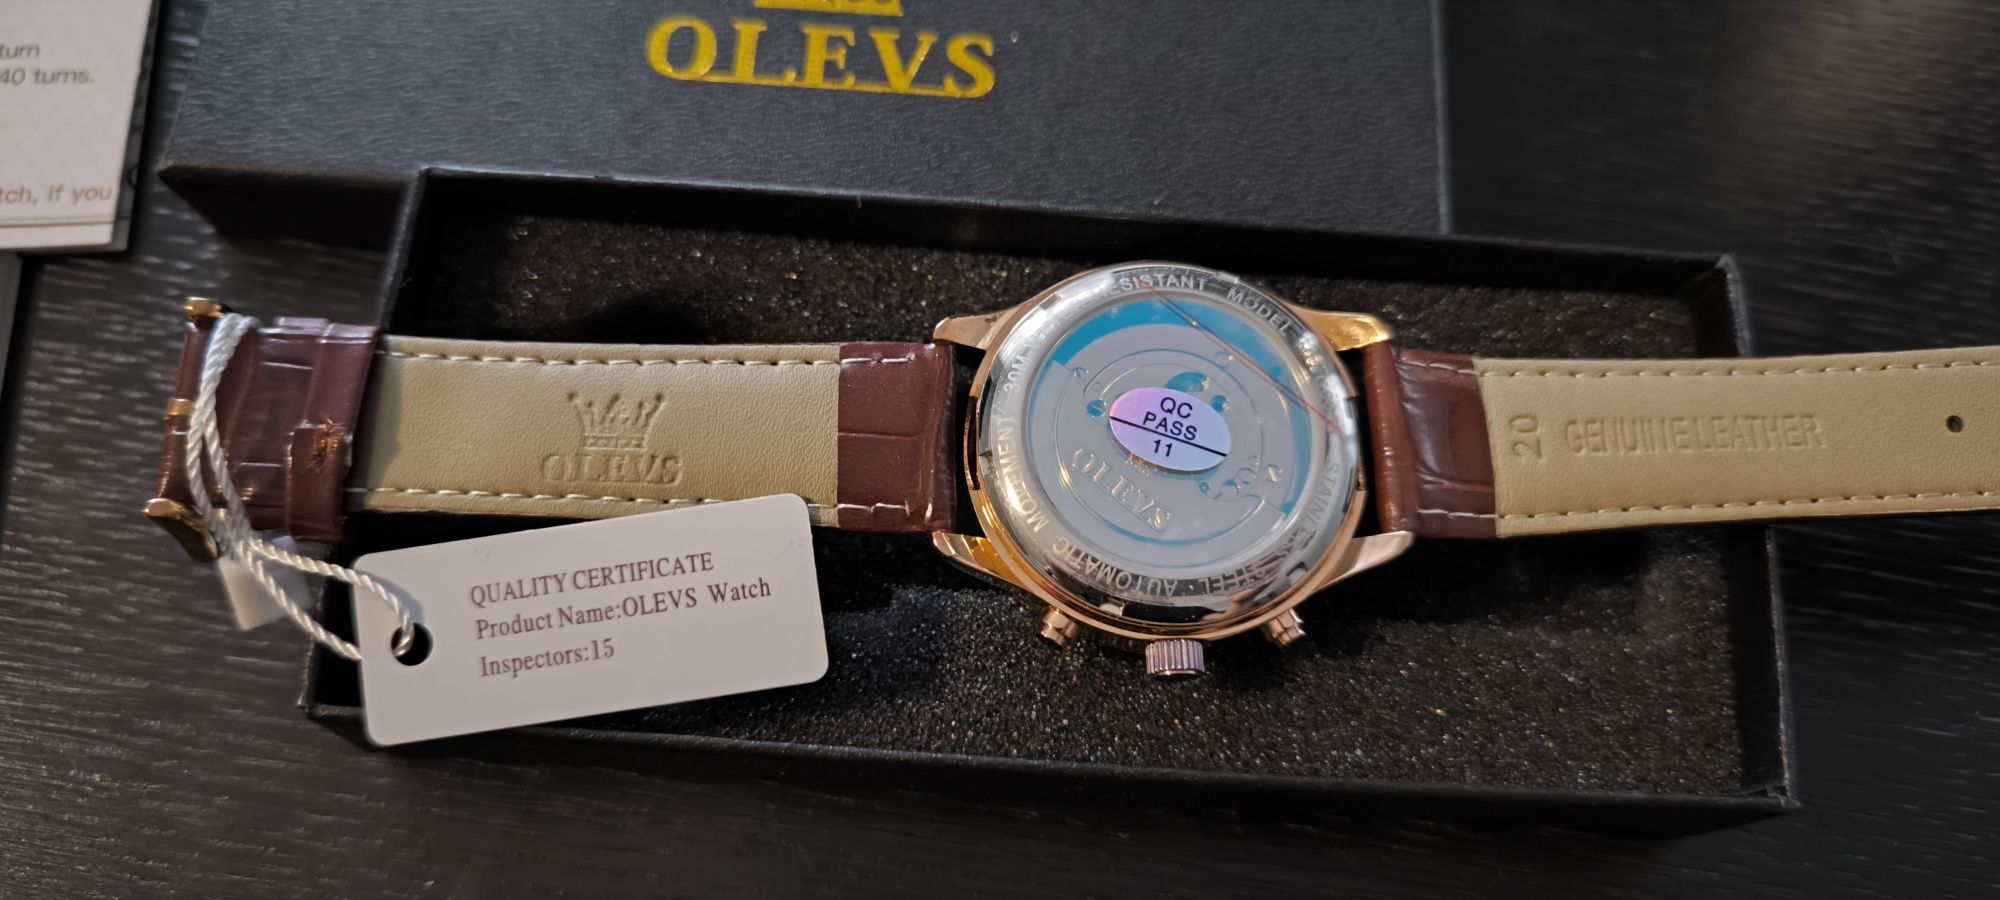 Nowy zegarek automatyczny firmy Olevs